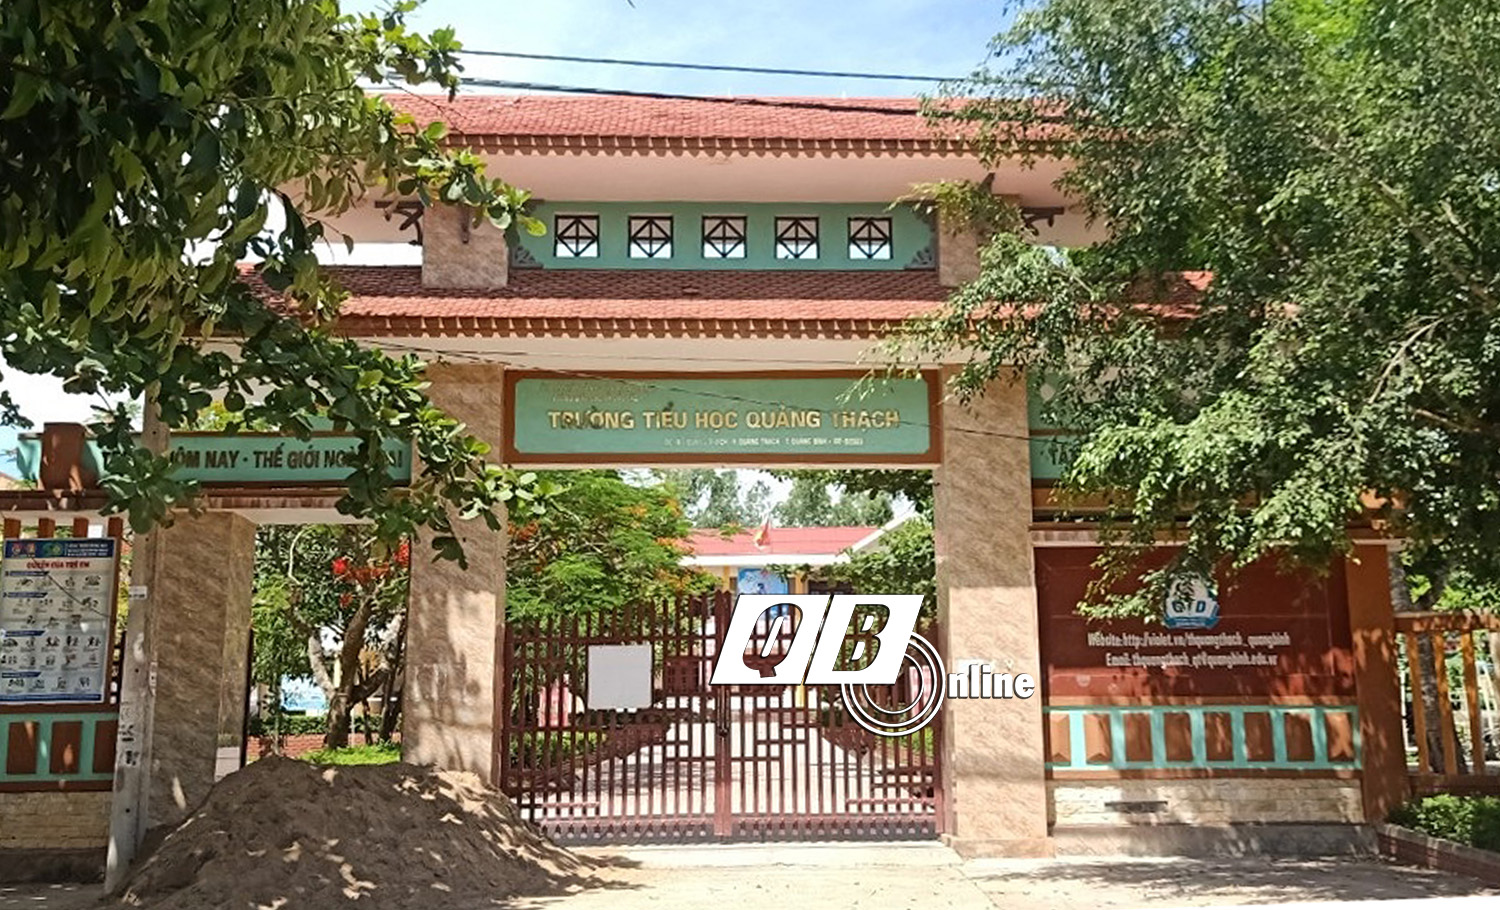 Trường tiểu học Quảng Thạch, nơi có đơn tố cáo.